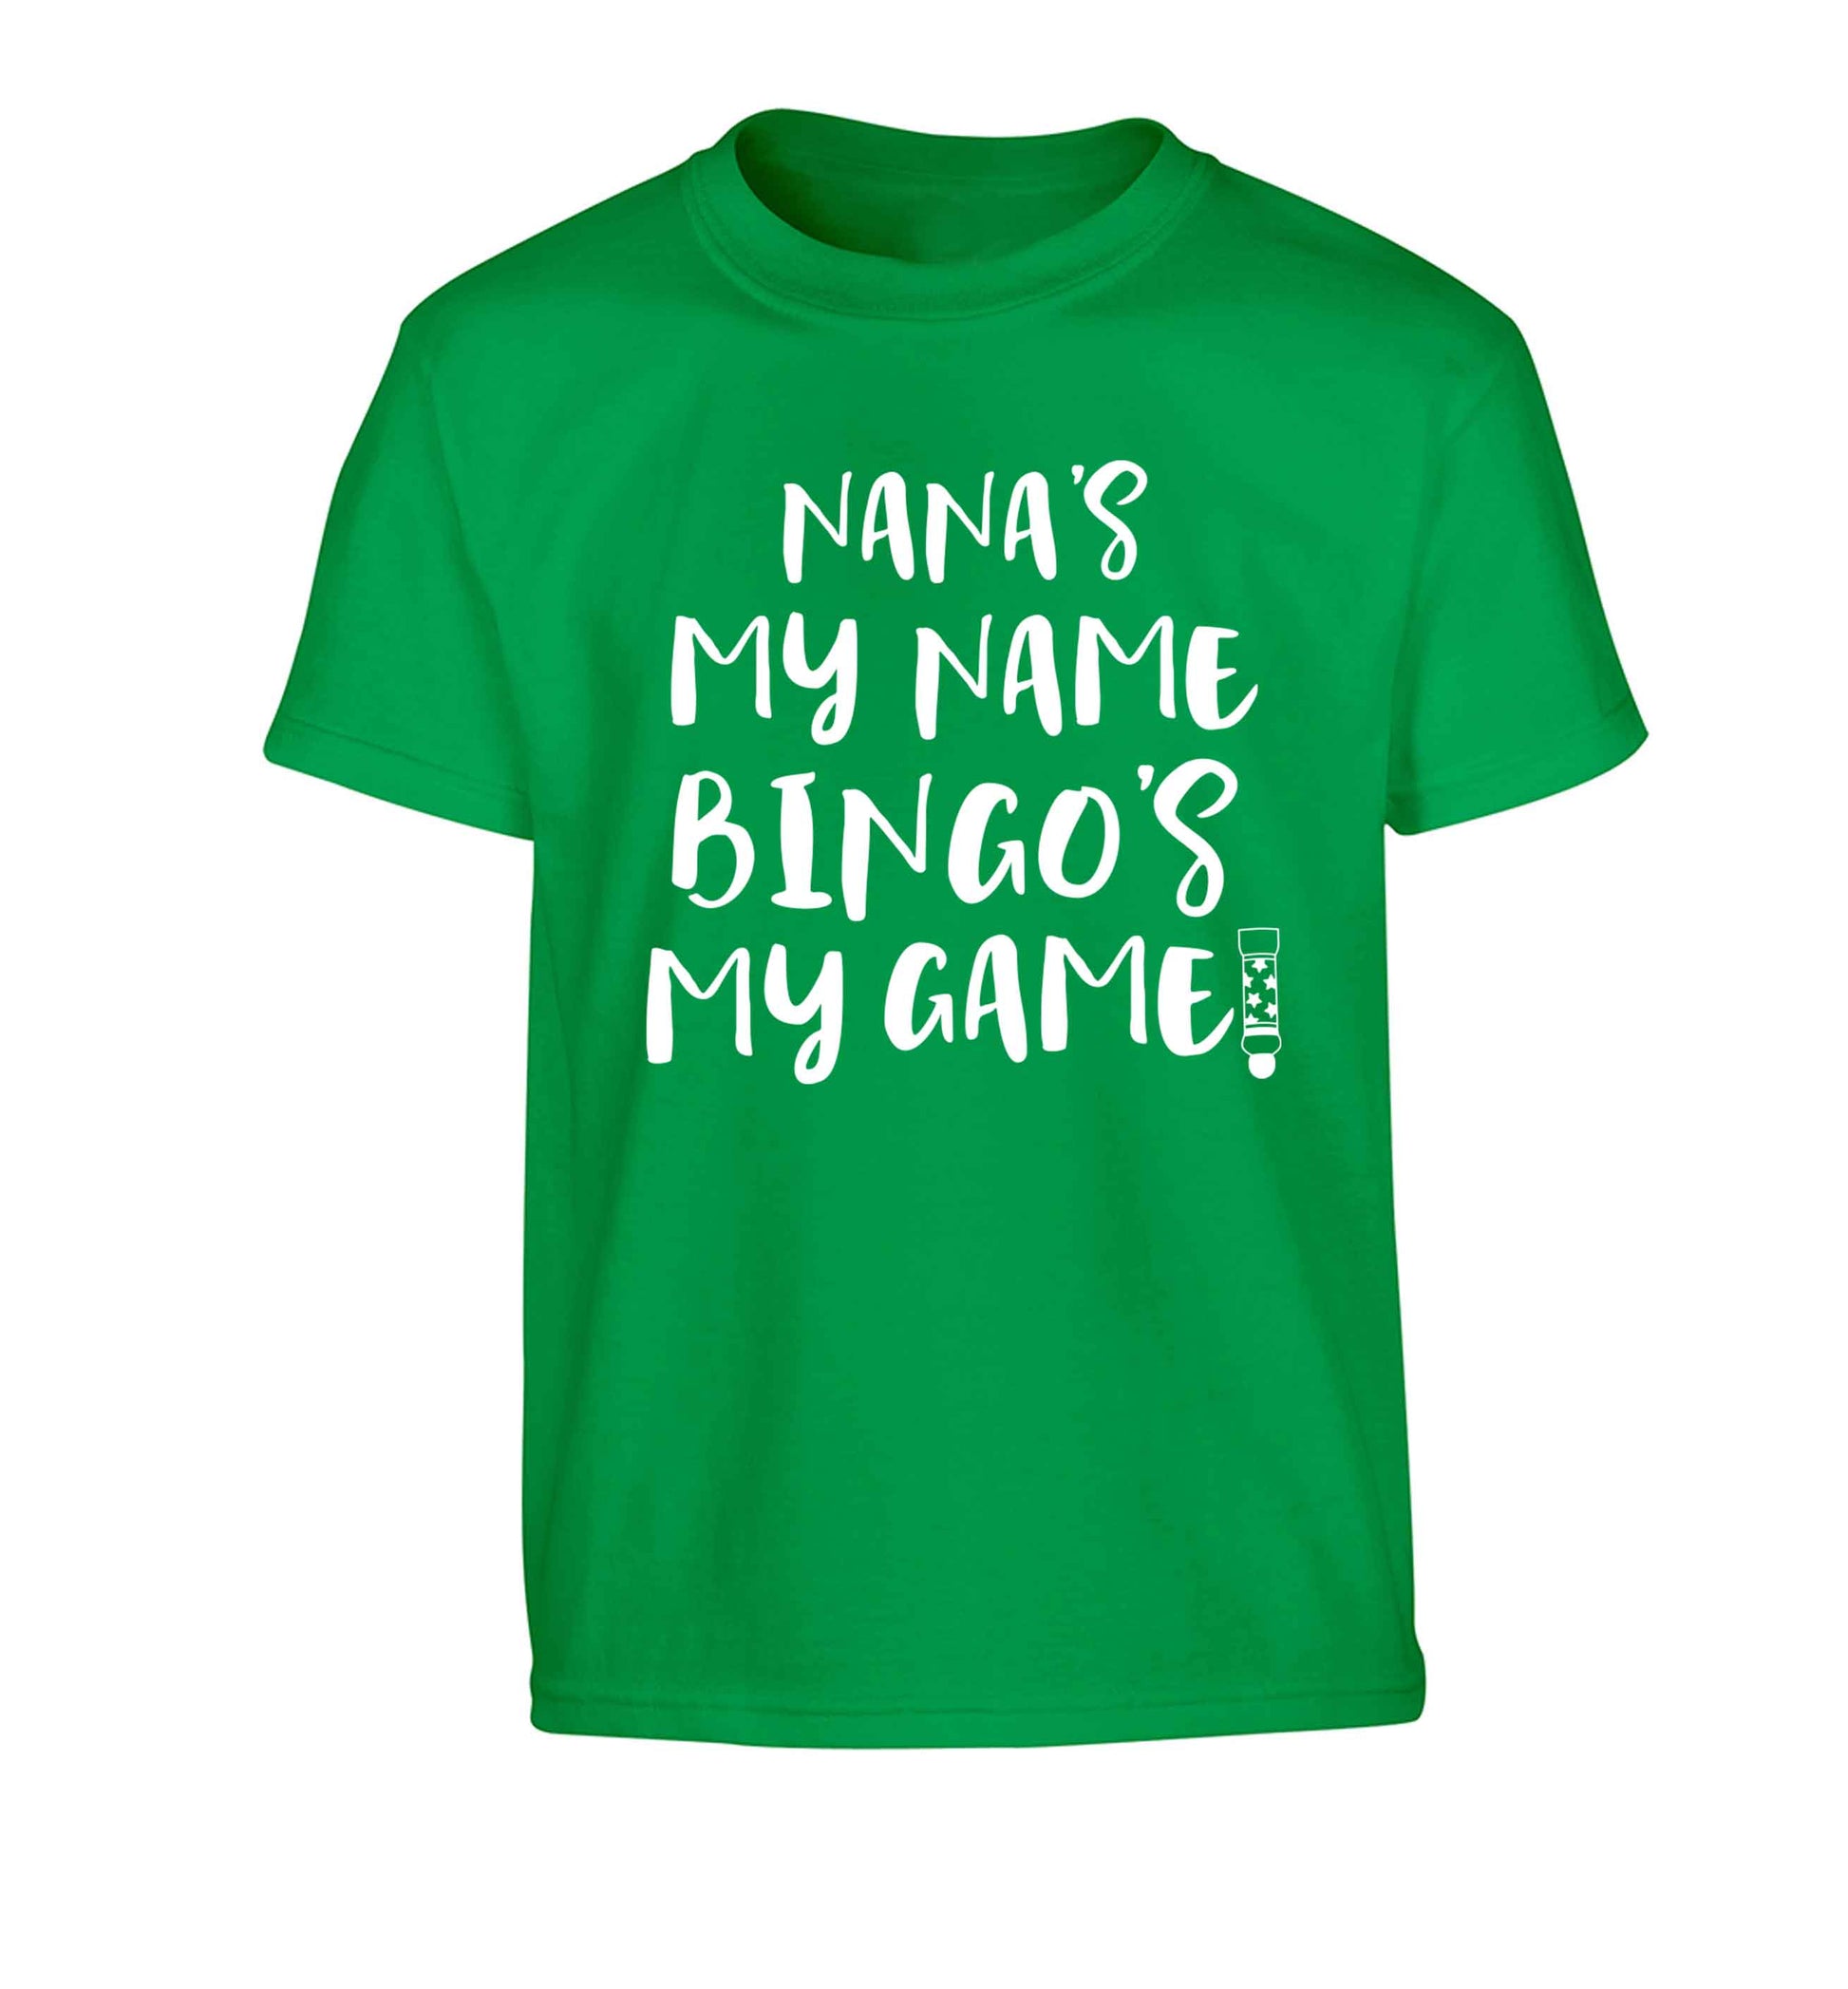 Nana's my name bingo's my game! Children's green Tshirt 12-13 Years